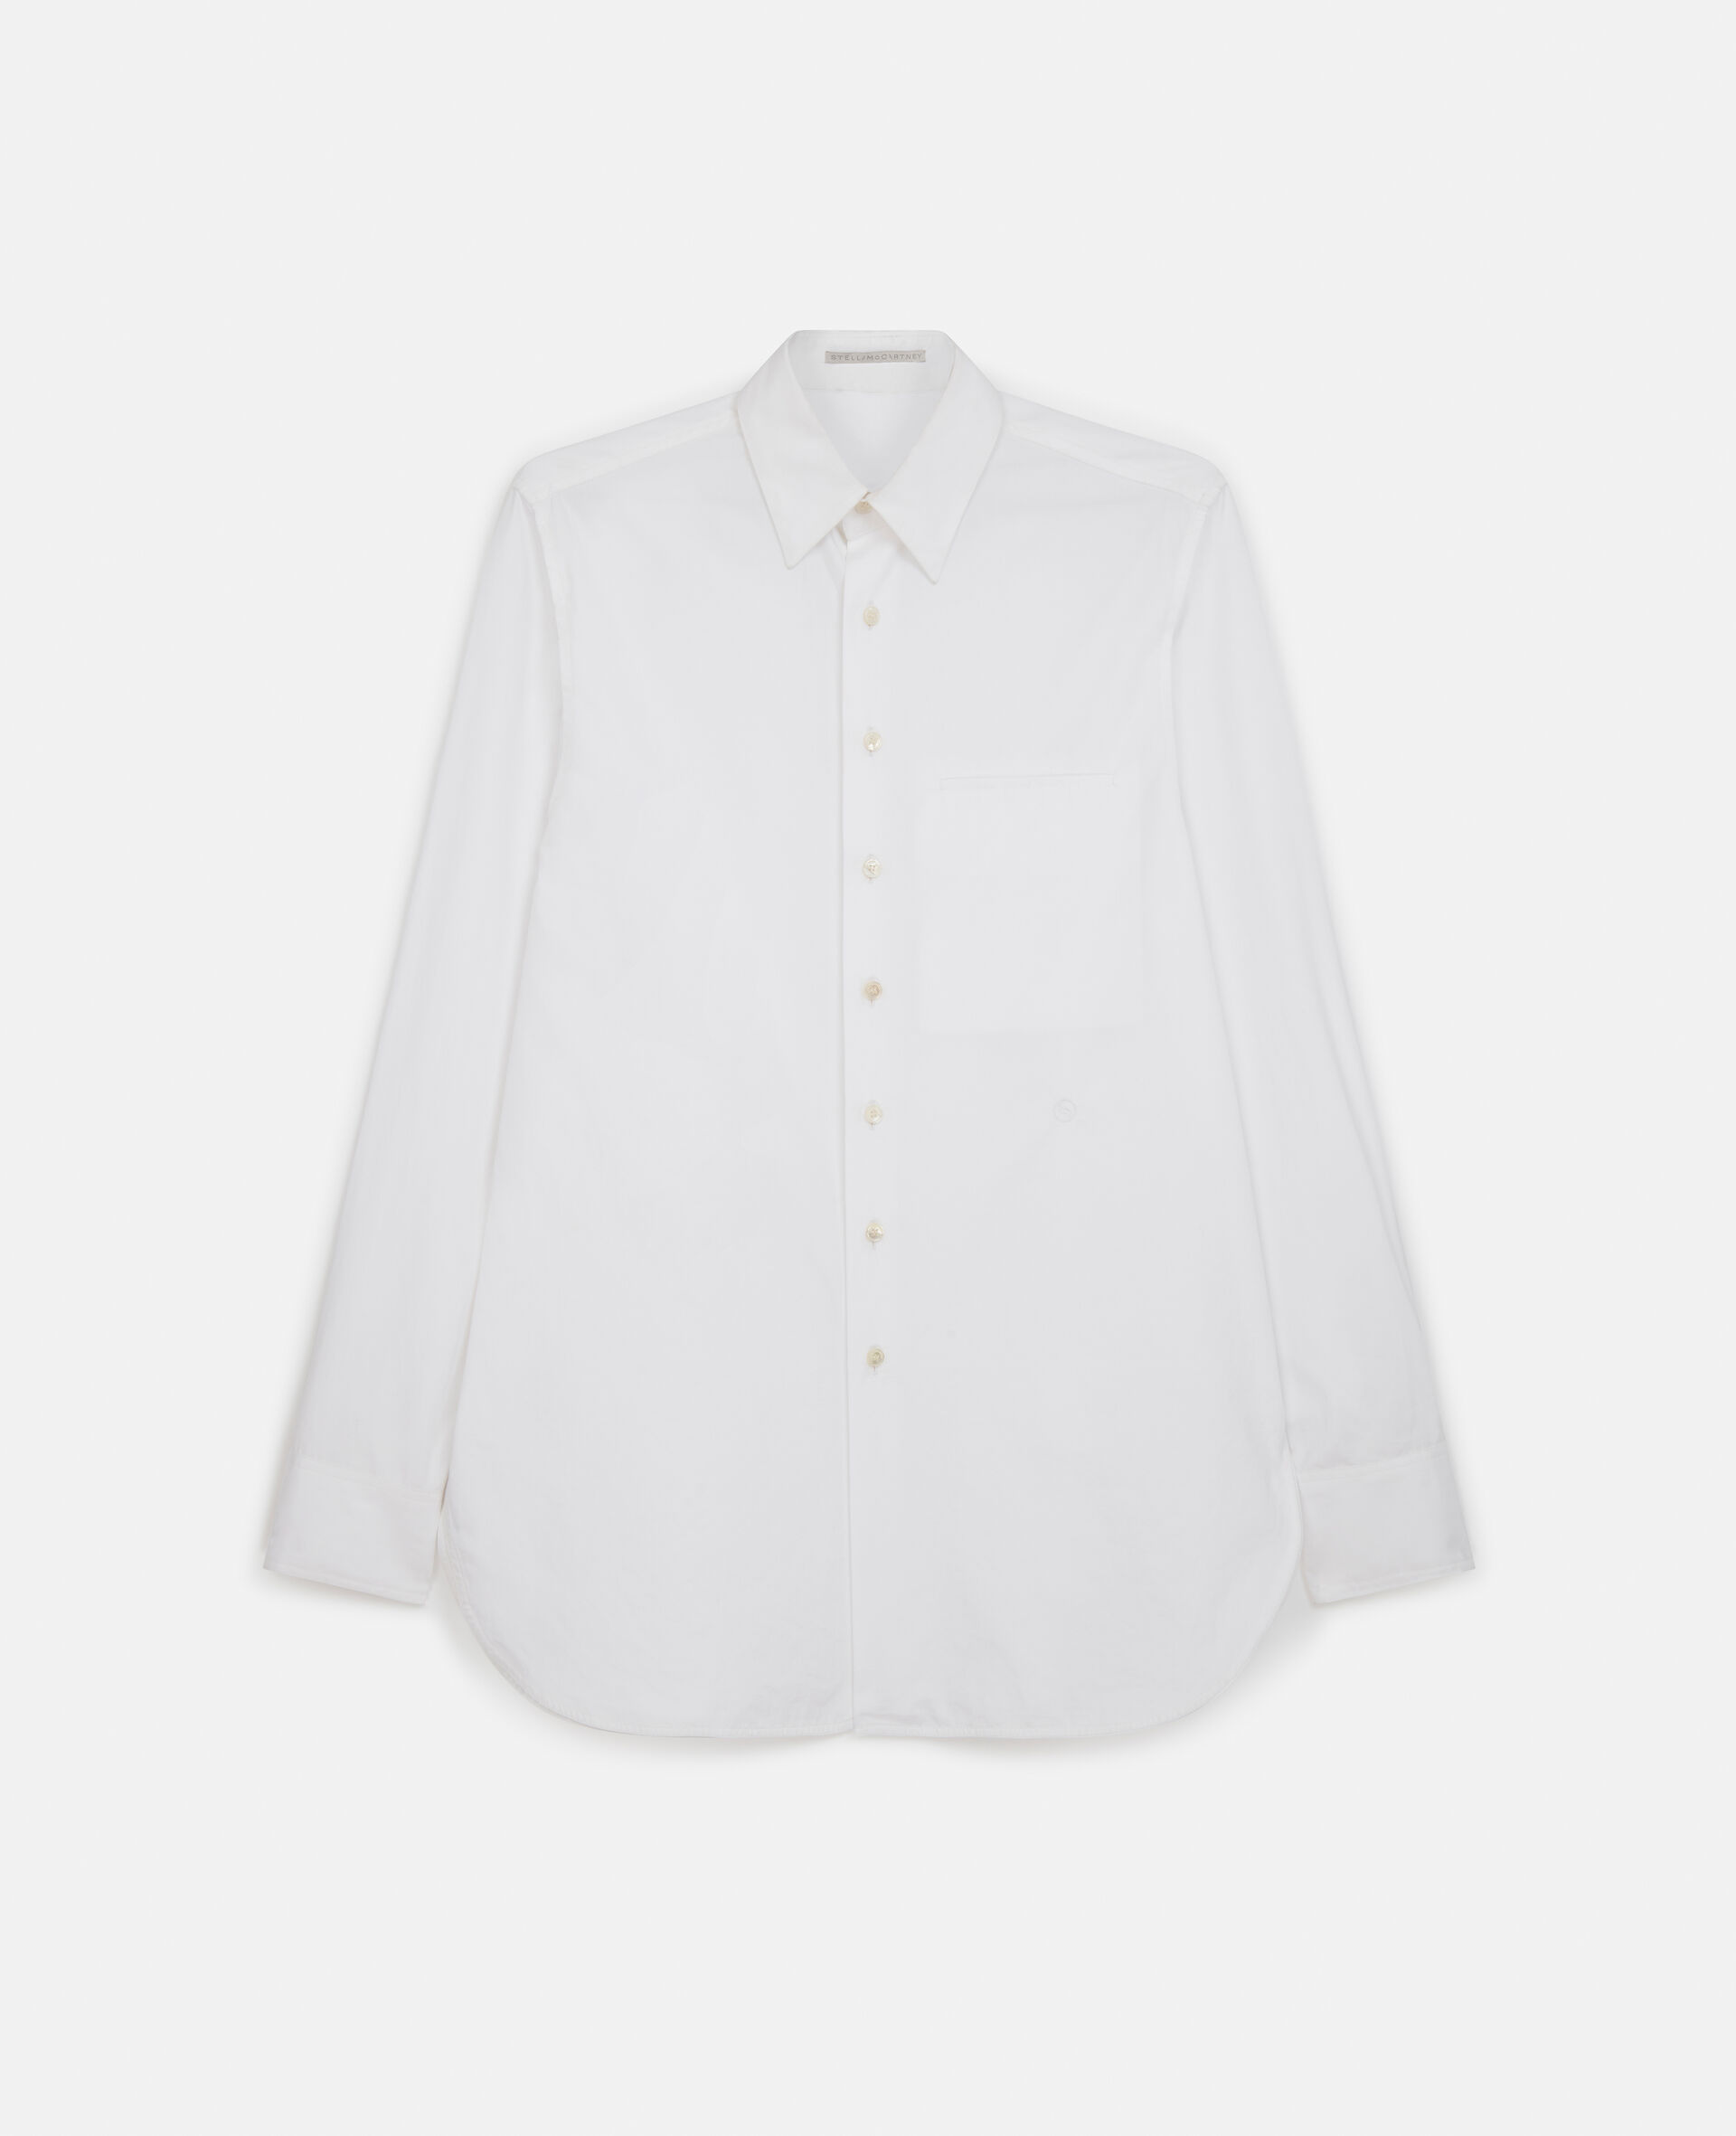 Boyfriend Fit Shirt-White-medium